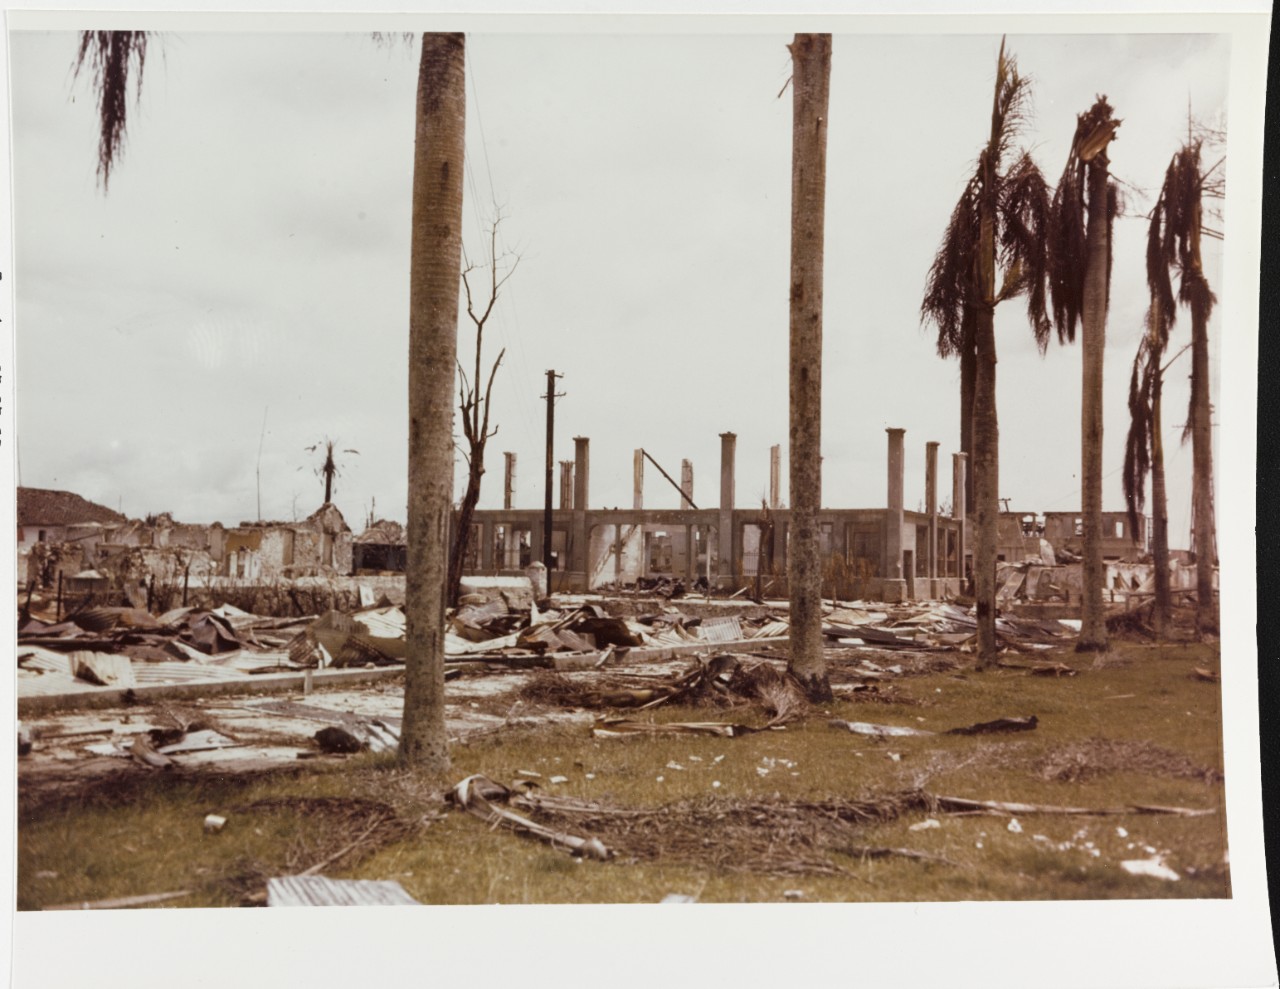 Agana, Guam, August 2, 1944